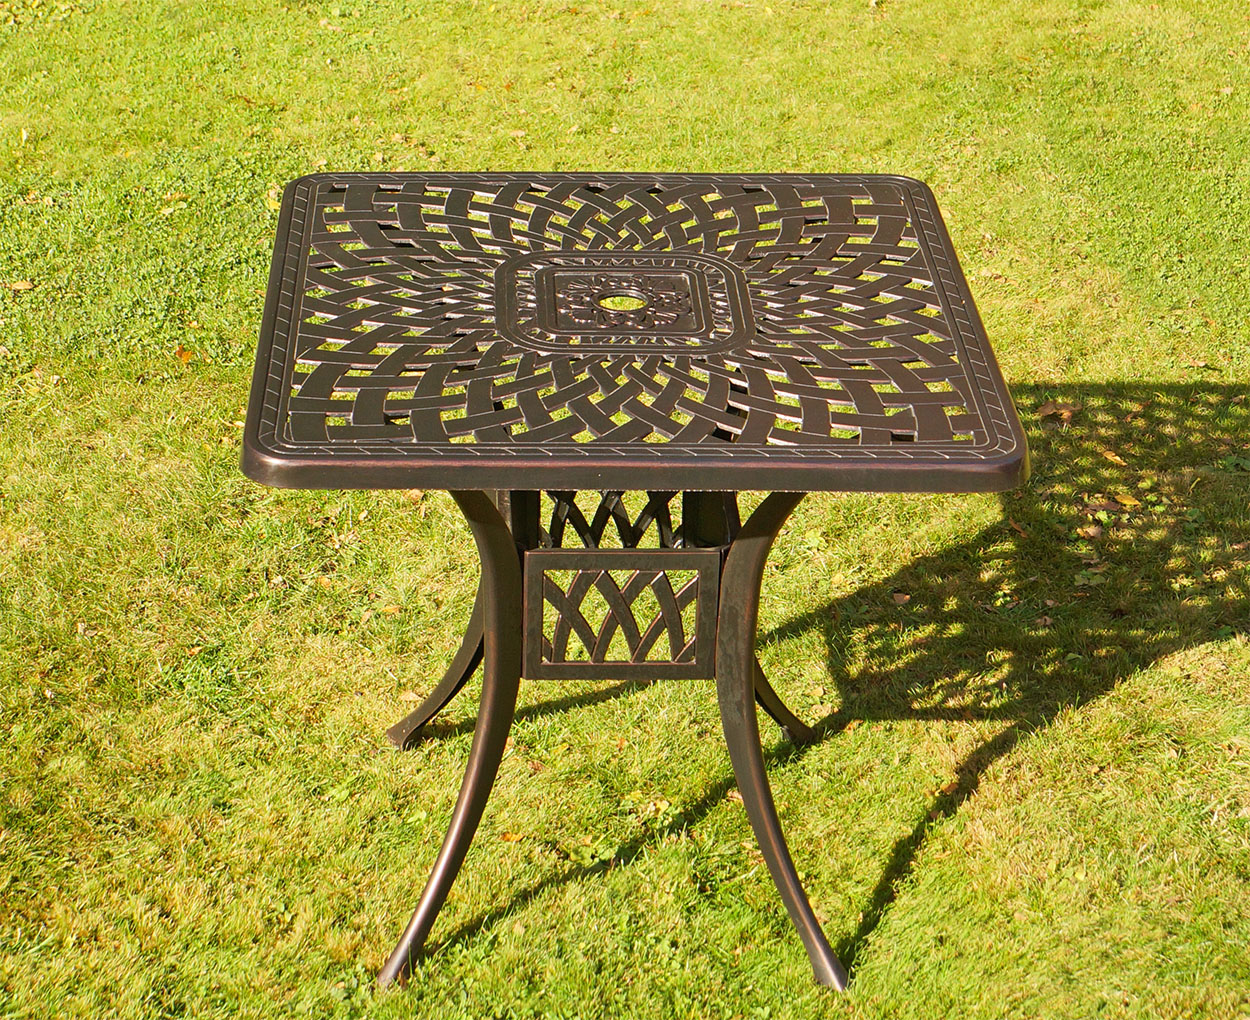 Ажурный стол для дачи из металла, кованая мебель для сада, уличный садовый стол из литого алюминия, чугунная мебель от производителя, стол литьё алюминия